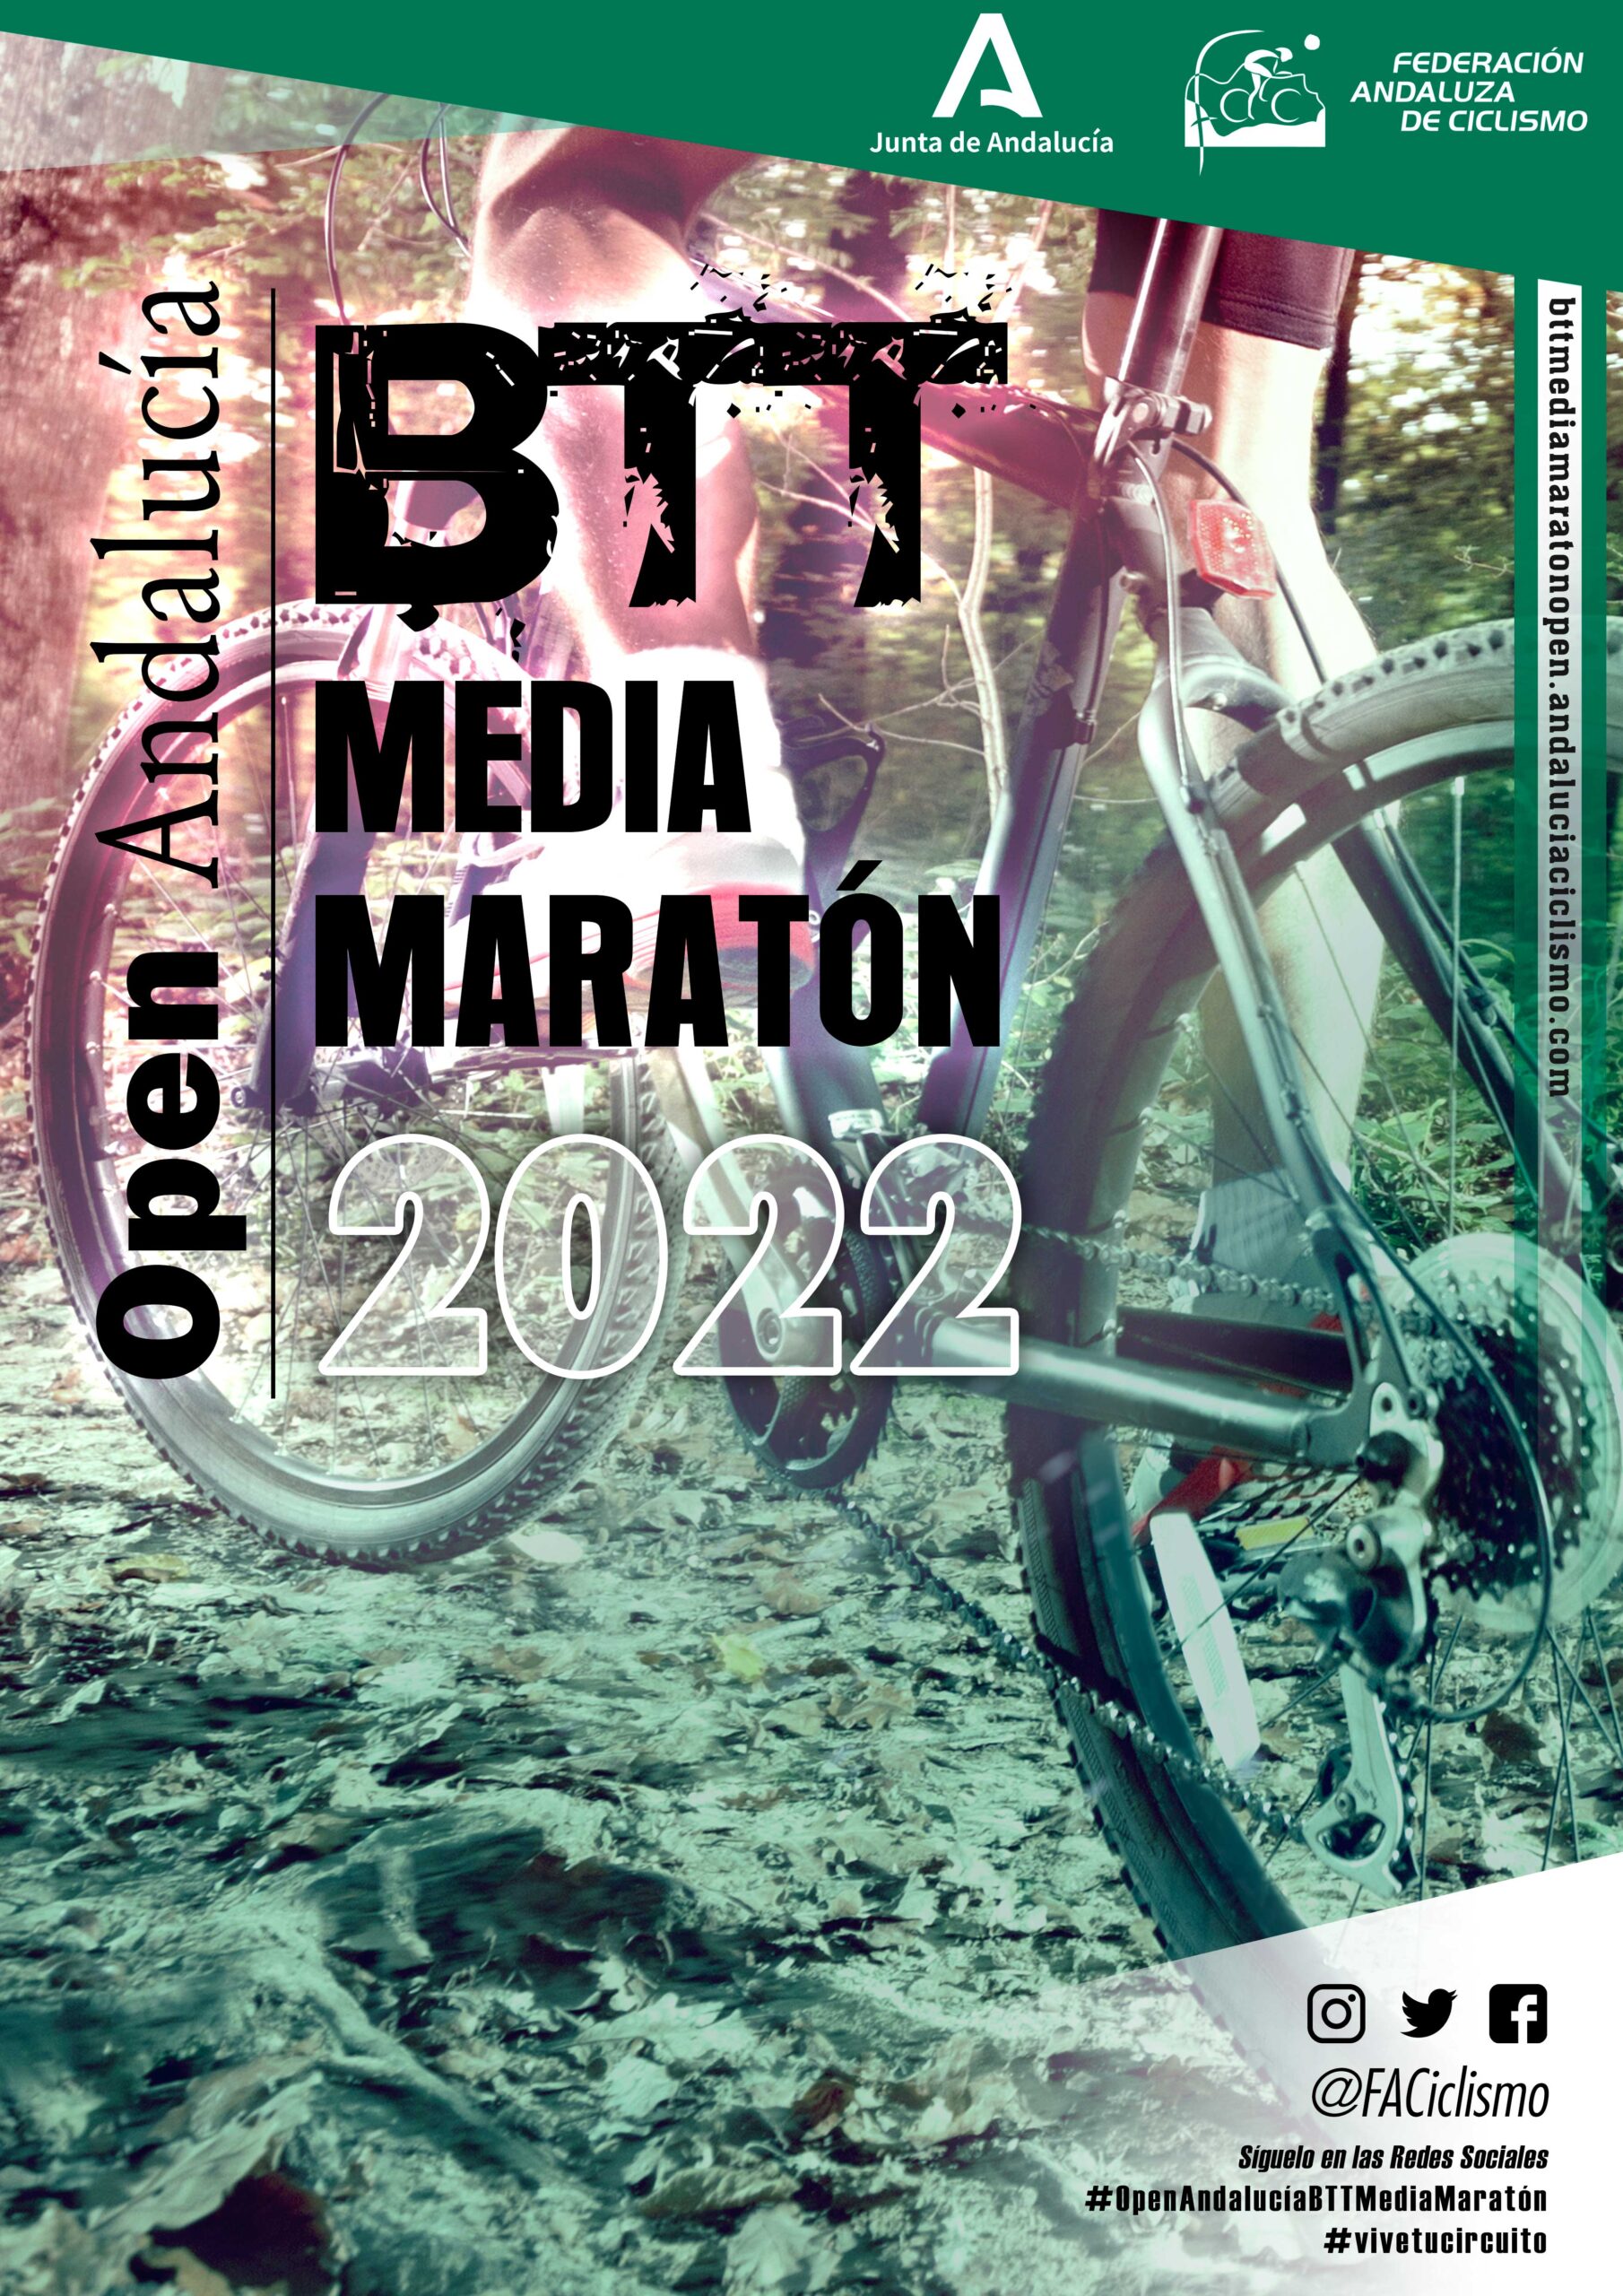 Abierto el plazo de inscripciones para la media maratón de ciclismo Utrera-Torre del Águila